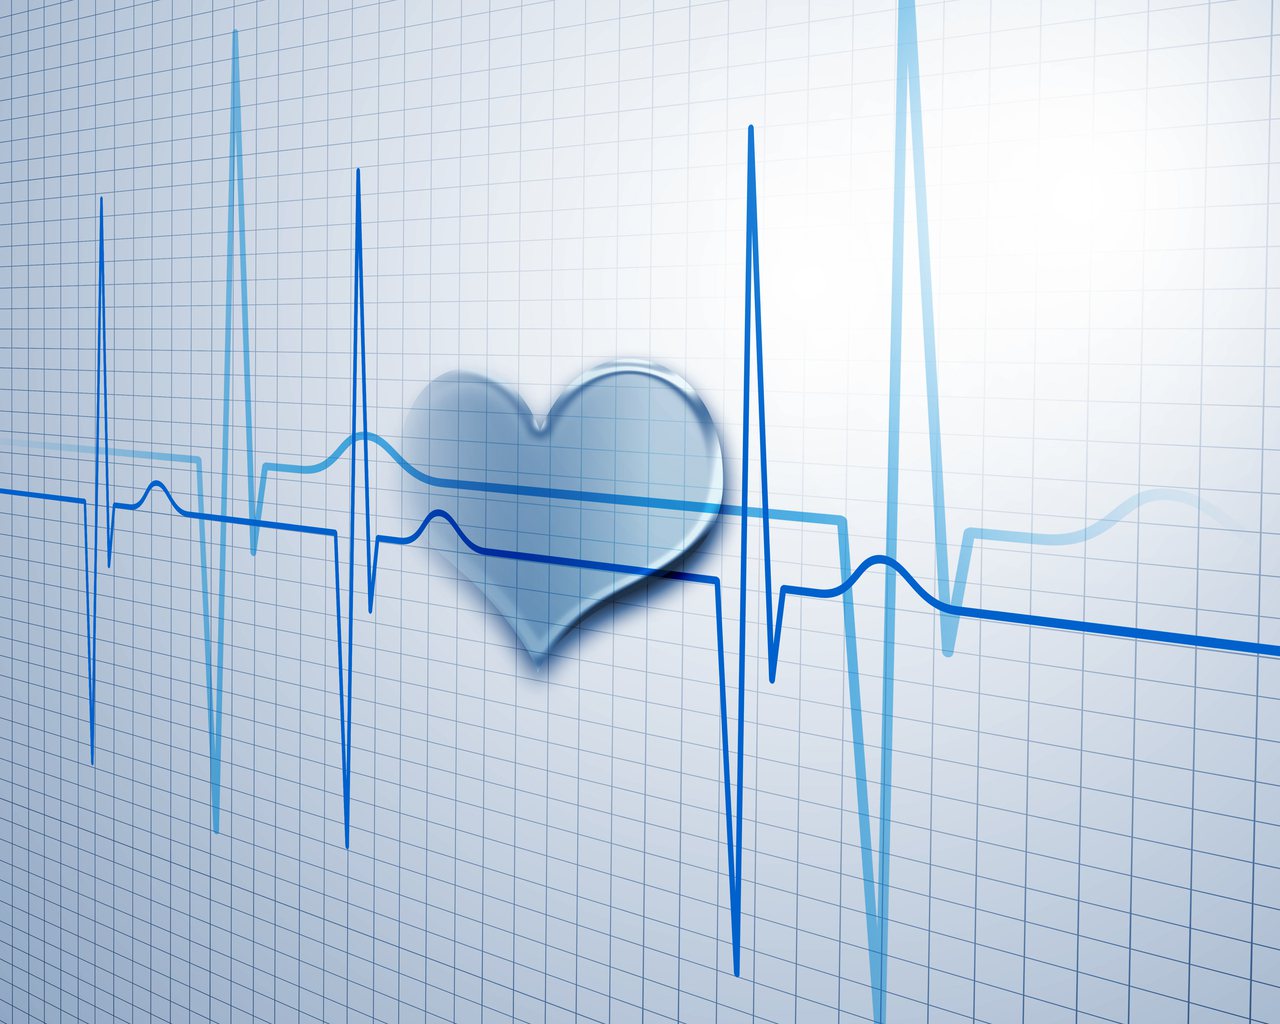 你的心率或脈搏是你的心臟每分鐘跳動的次數。正常心率因人而異，了解你的心率可能是一個重要的心臟健康指標。